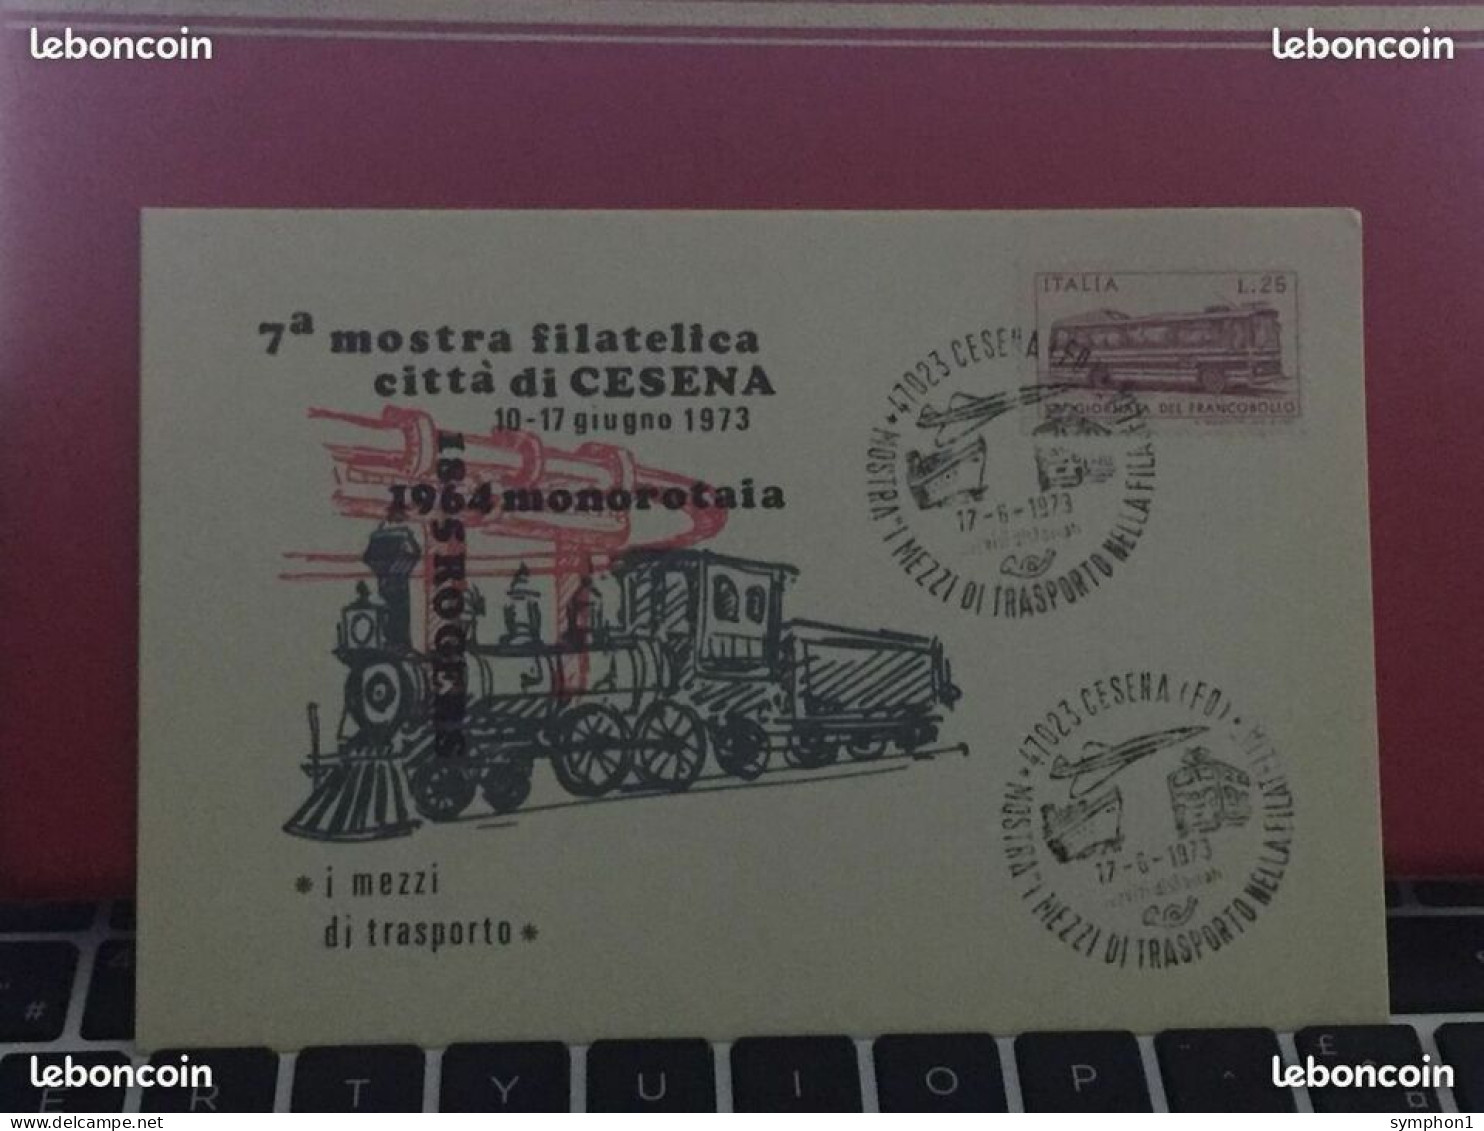 Enveloppes FDI de France & Italie de 1955, 71, 73 et 76 "Exposition Philatélique